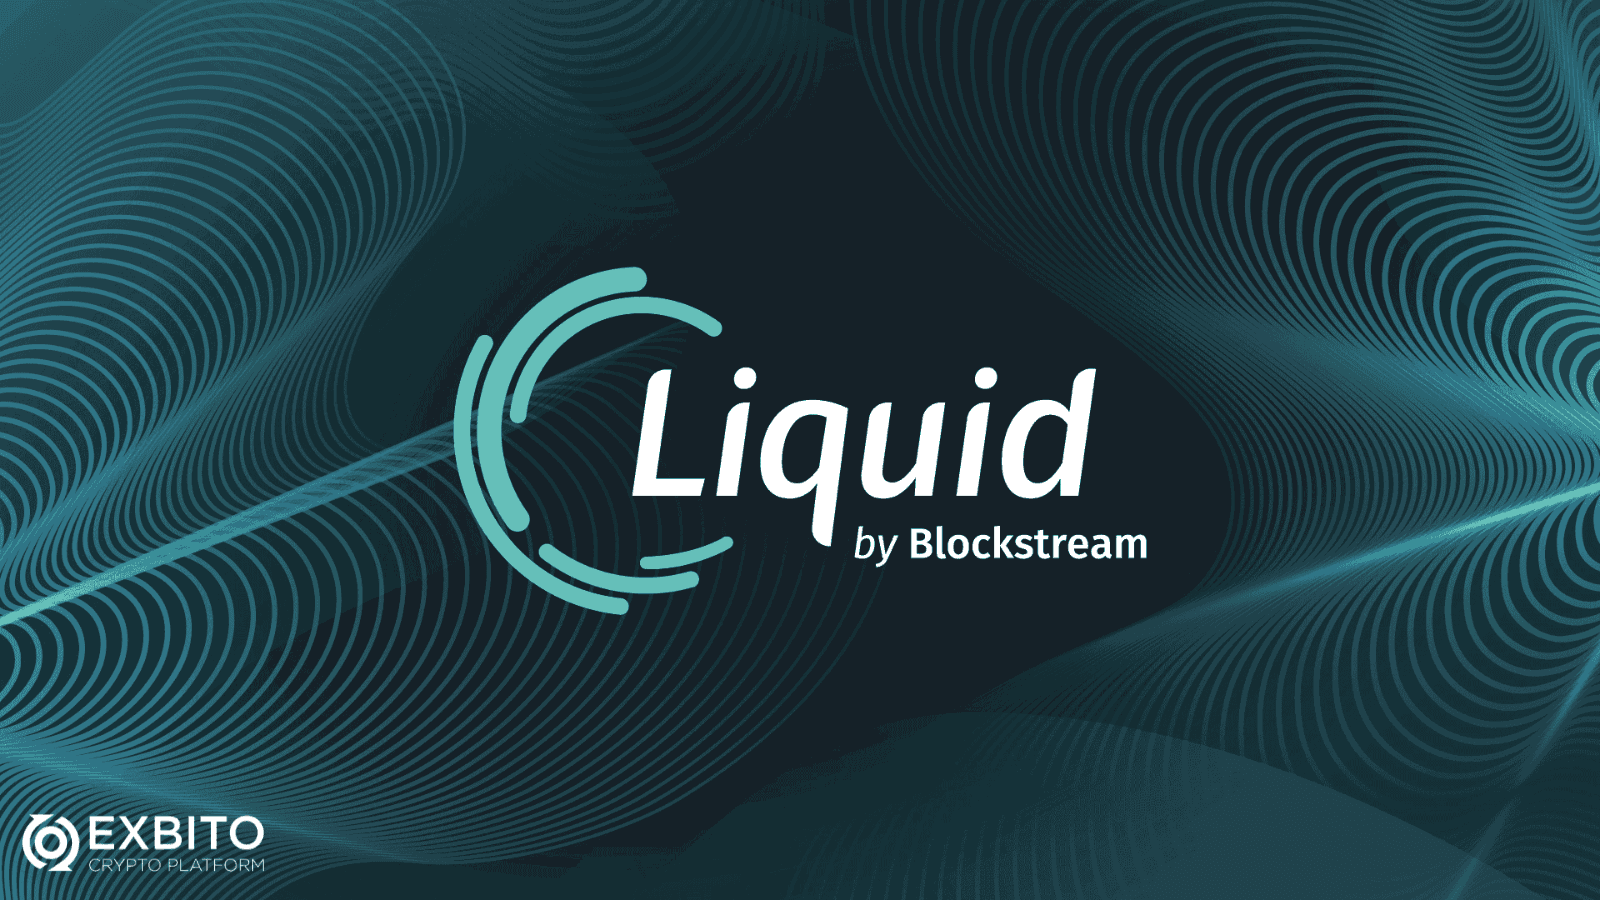 لیکوئید (Liquid)